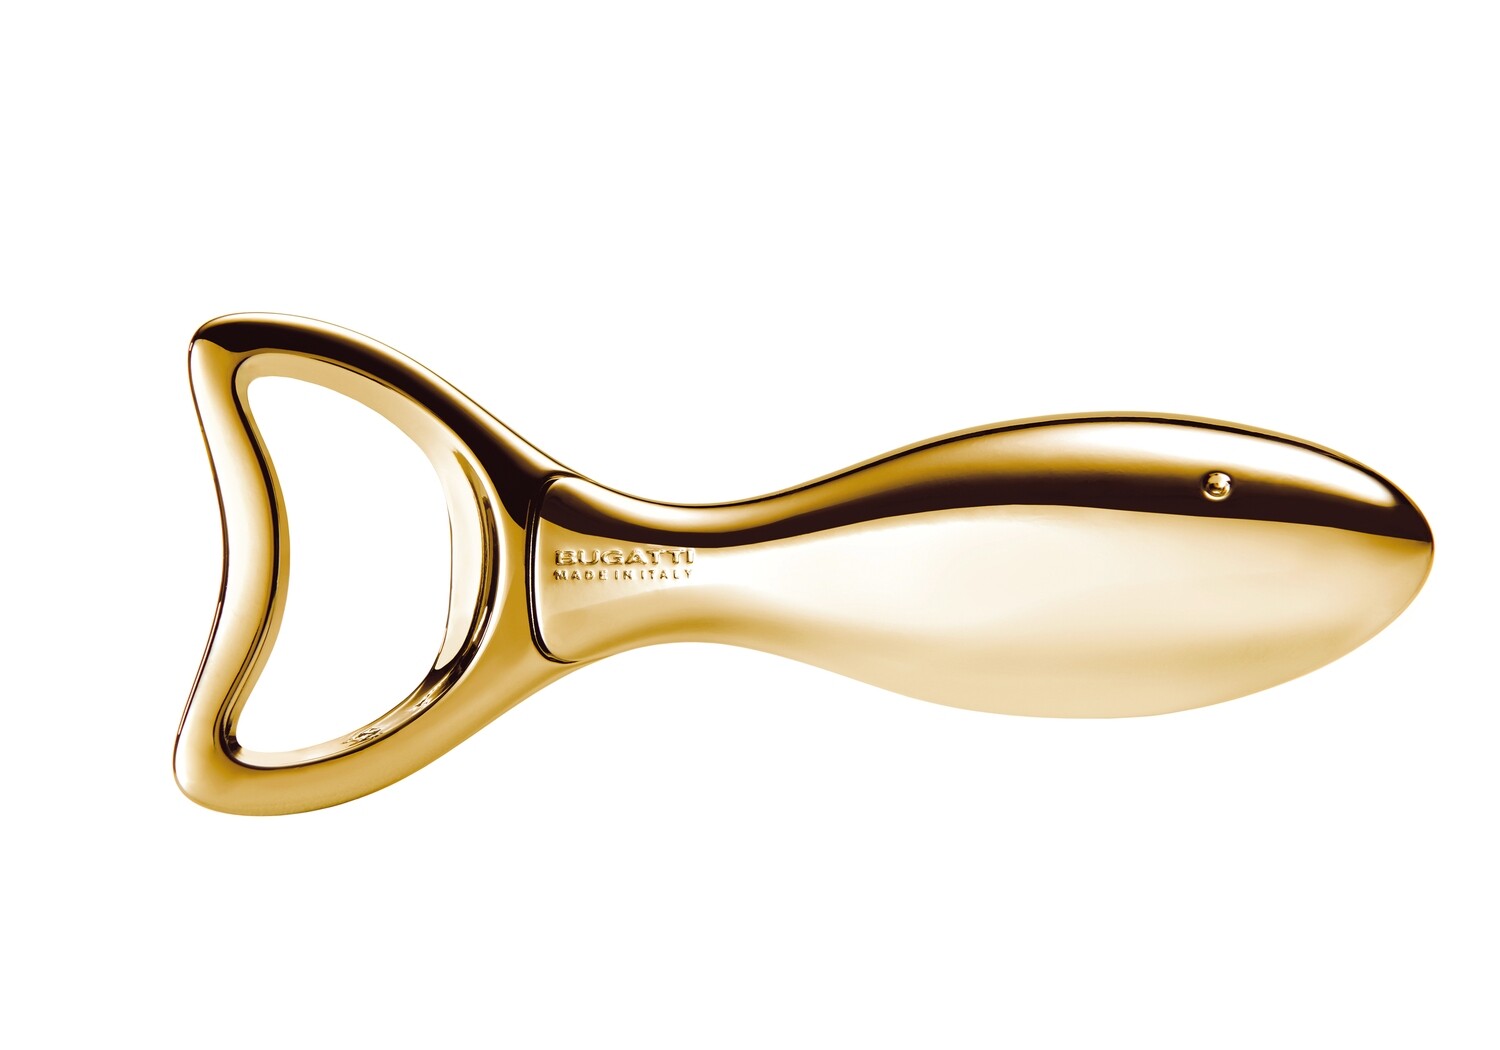 Lino Bottle Opener Gold